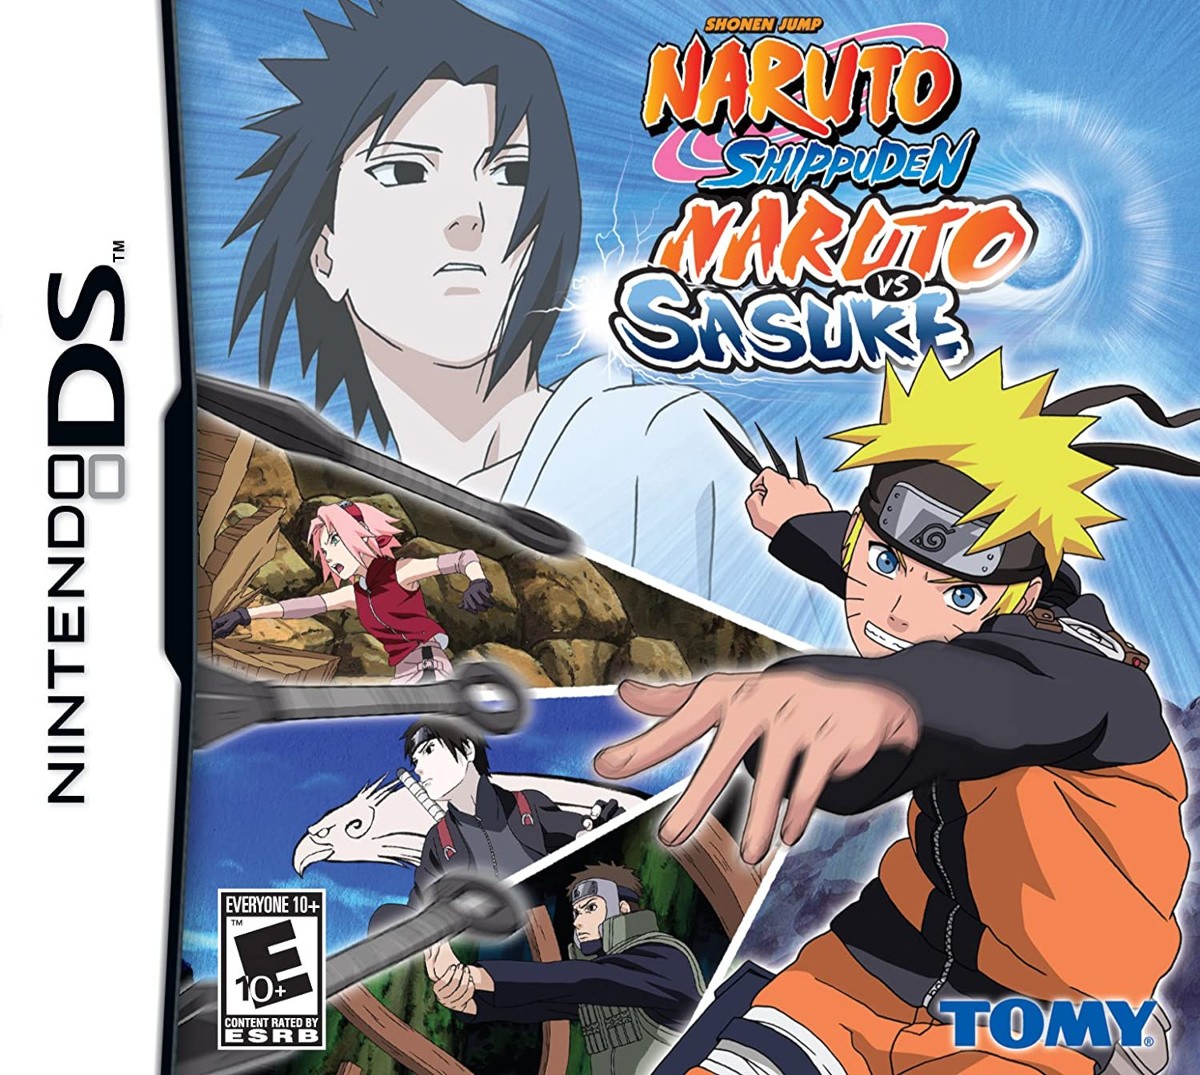 Capa do jogo Naruto Shippuden: Naruto vs. Sasuke